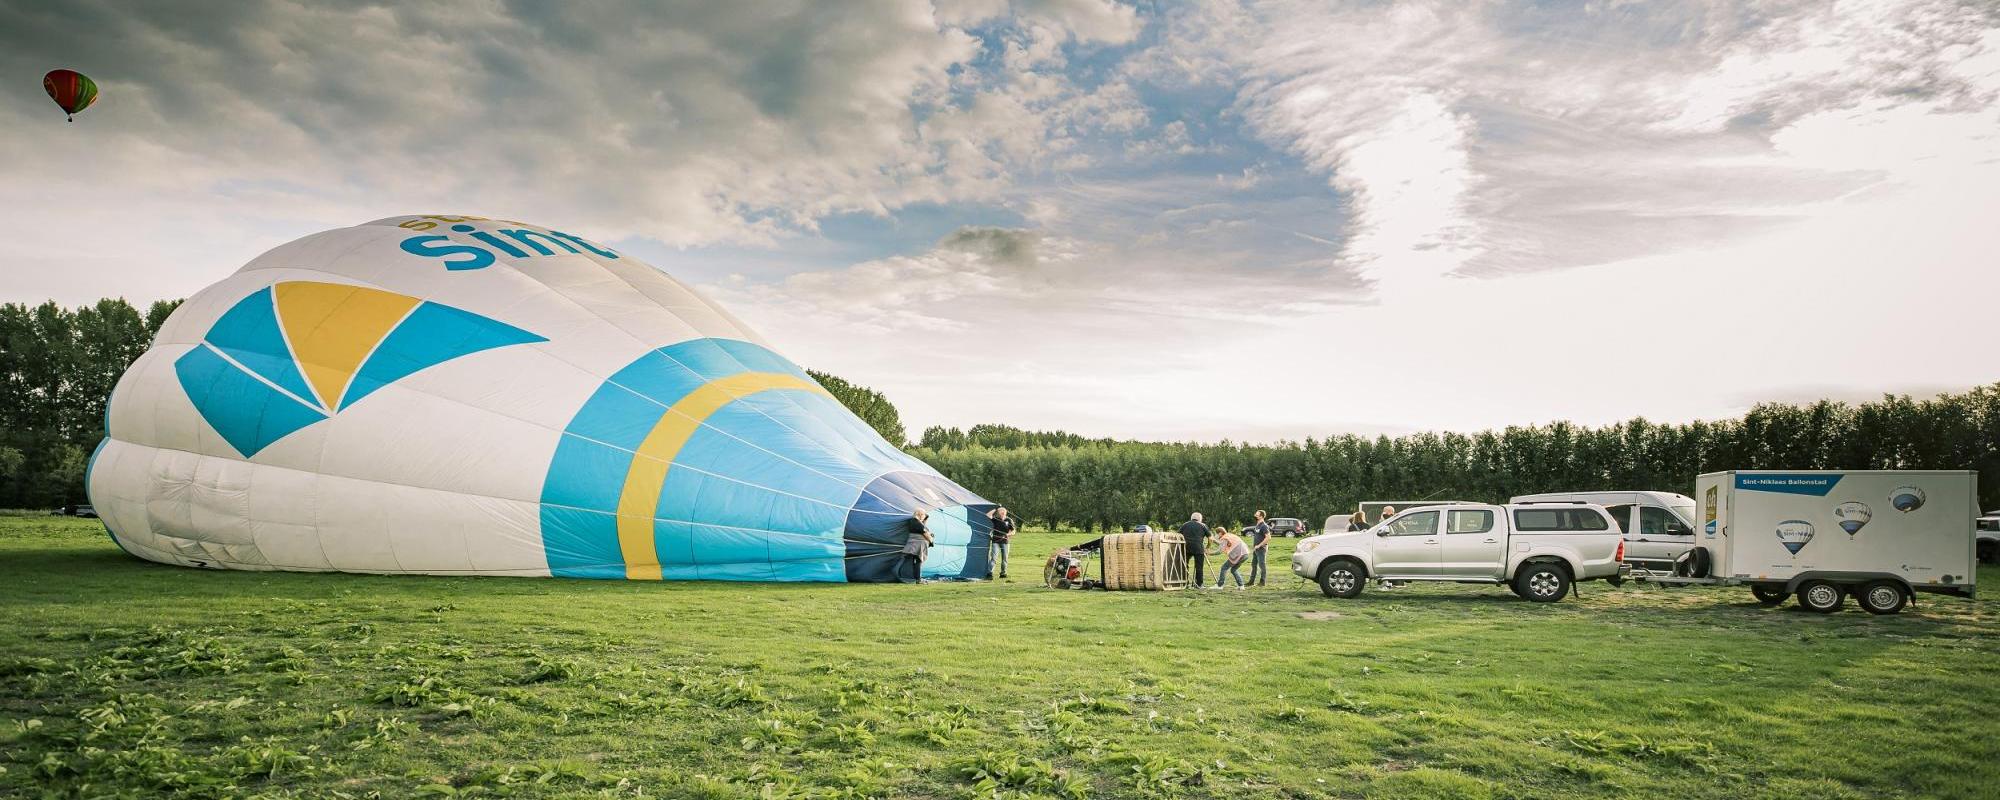 De ballon van stad Sint-Niklaas wordt opgeblazen op het veld